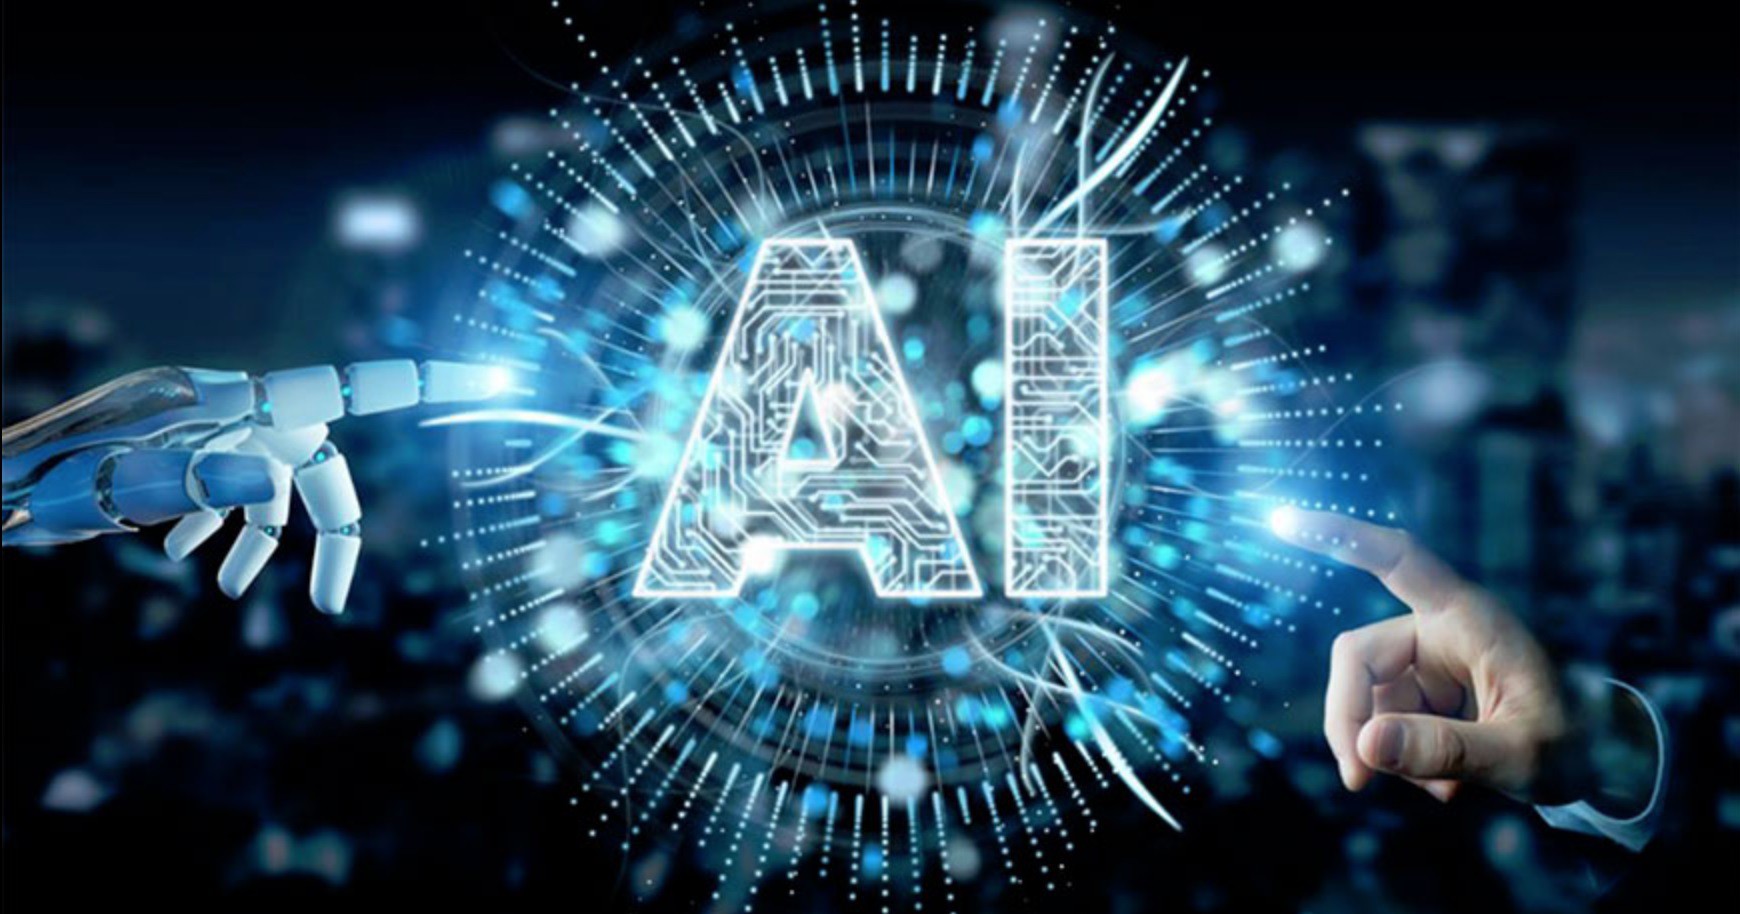 Đề xuất 07 hoạt động trí tuệ nhân tạo (AI) bị nghiêm cấm theo Dự thảo Luật Công nghiệp công nghệ số